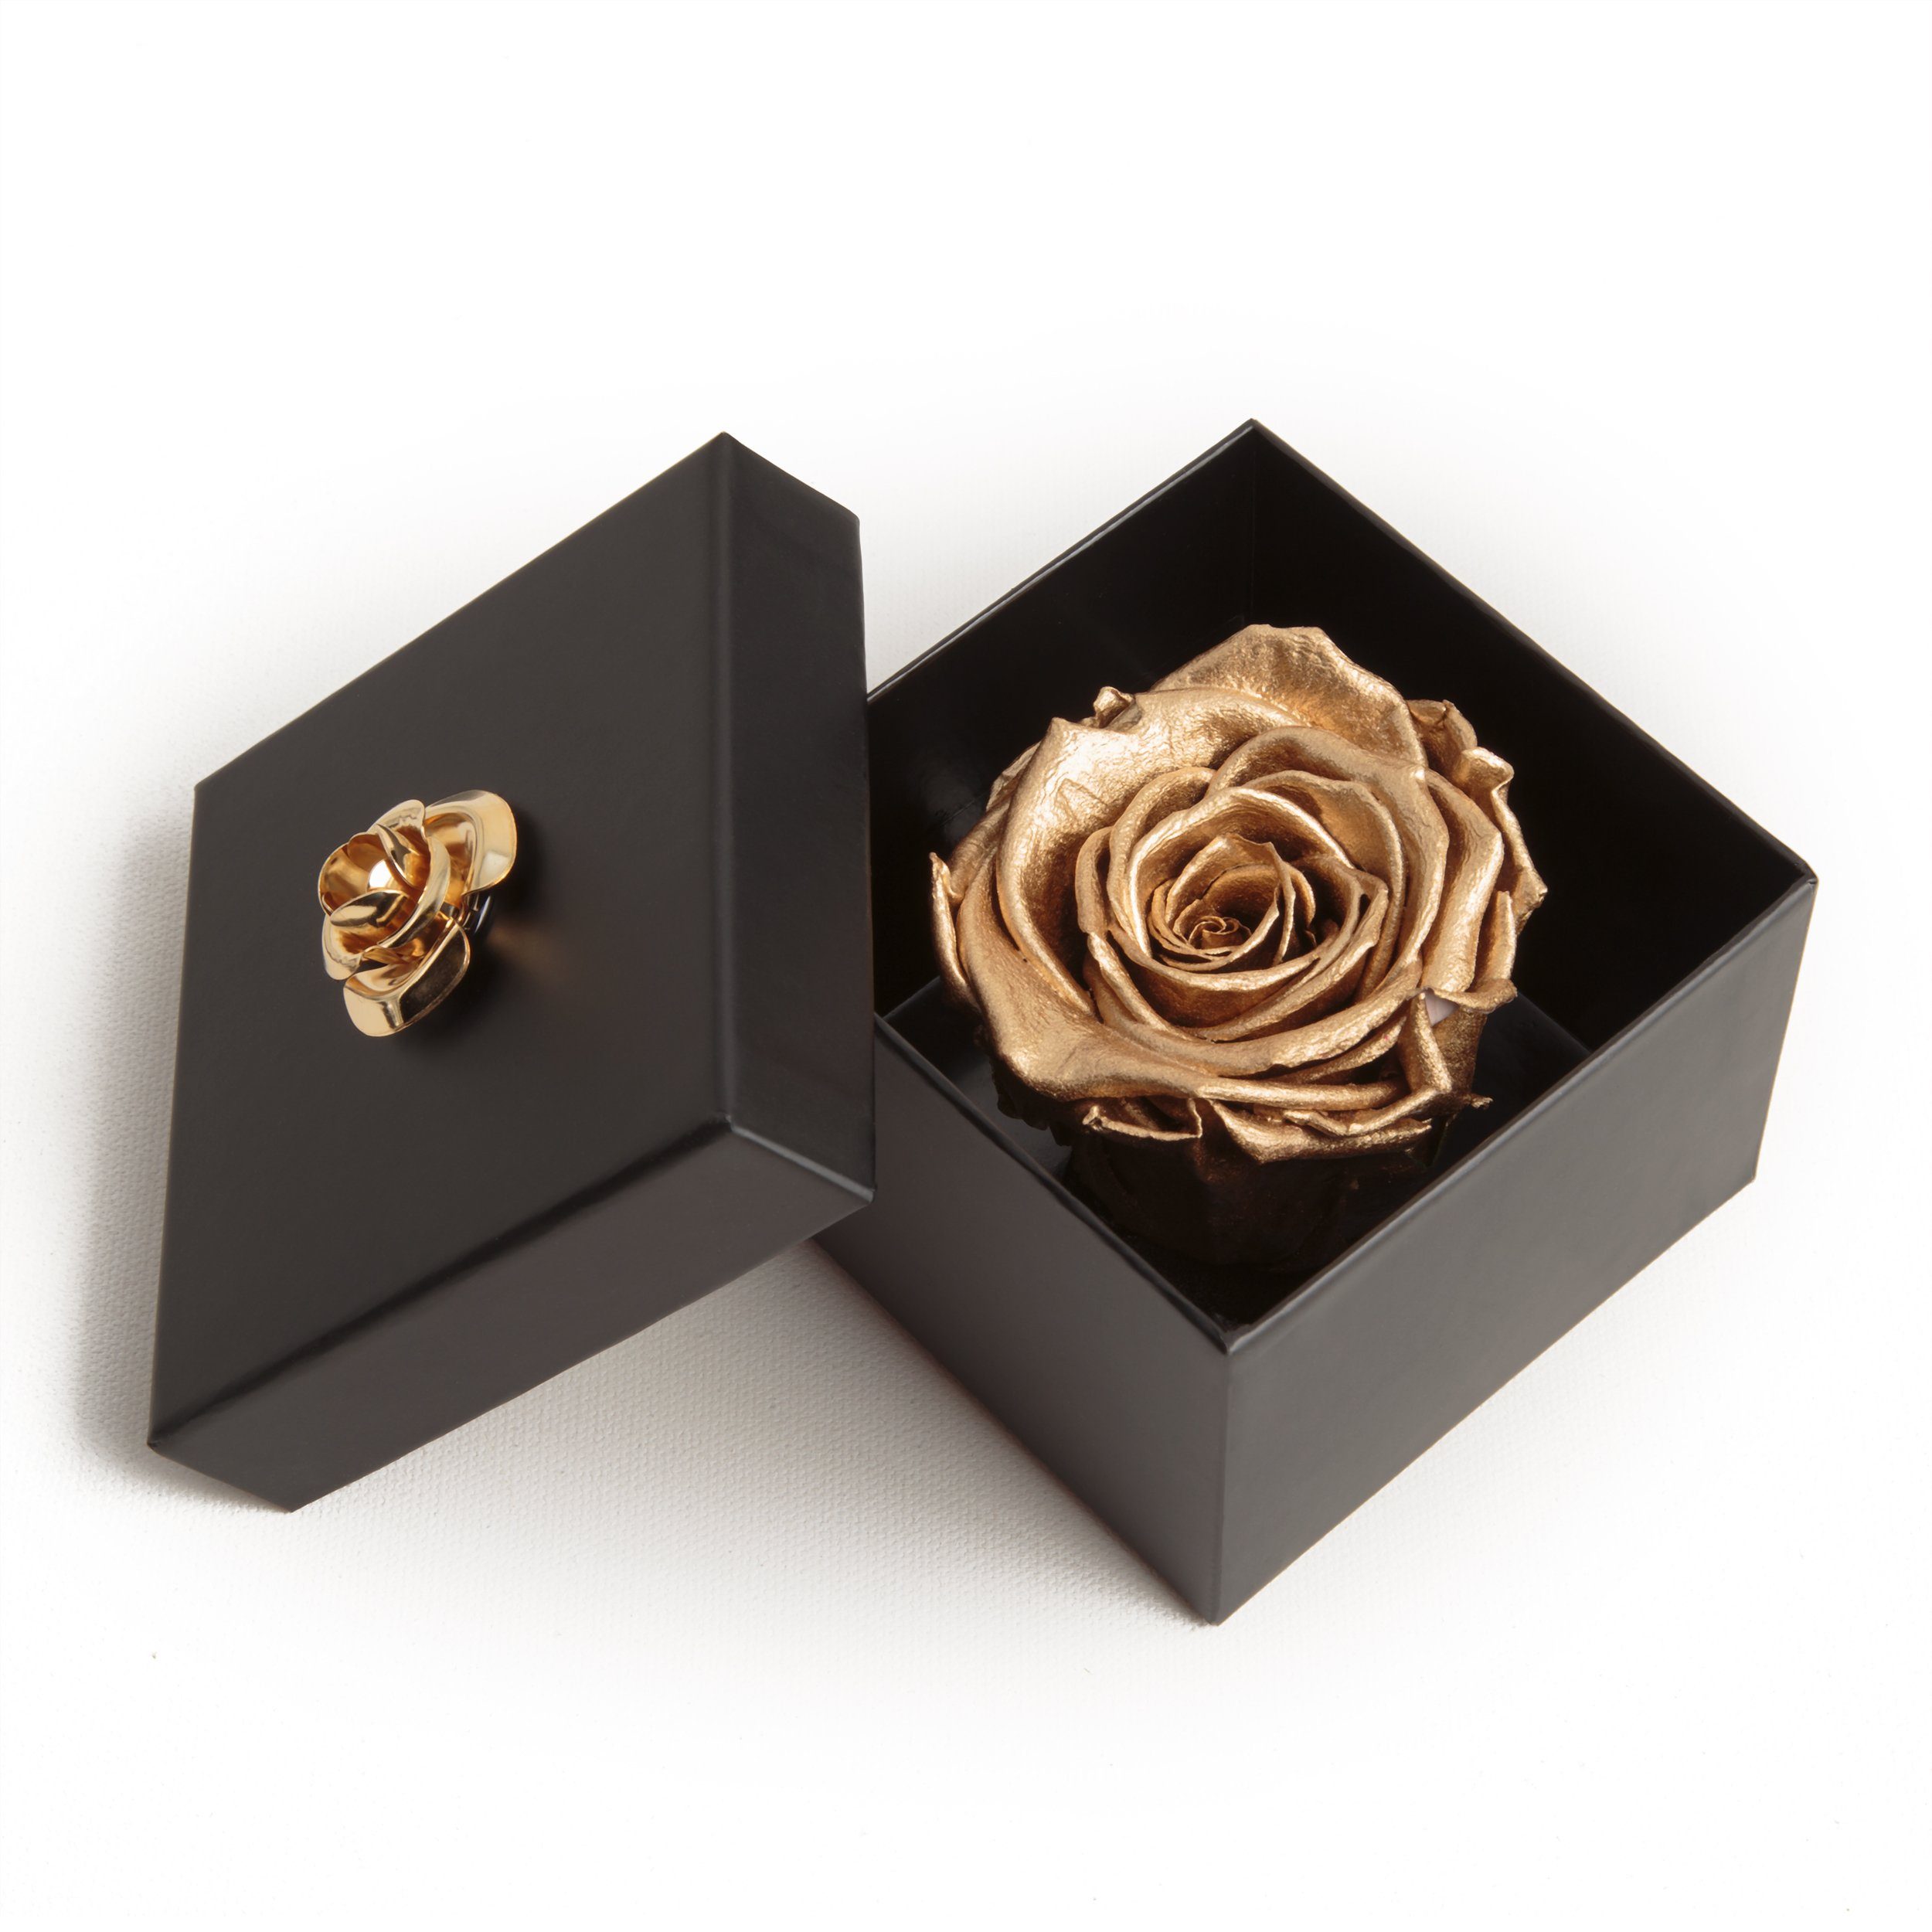 Kunstblume »Infinity Rose haltbar 3 Jahre Rose in Box konserviert mit Blume  Valentinstag Geschenk für sie Rose« Rose, ROSEMARIE SCHULZ Heidelberg, Höhe  6.5 cm, Echte Rose haltbar bis zu 3 Jahre online kaufen | OTTO